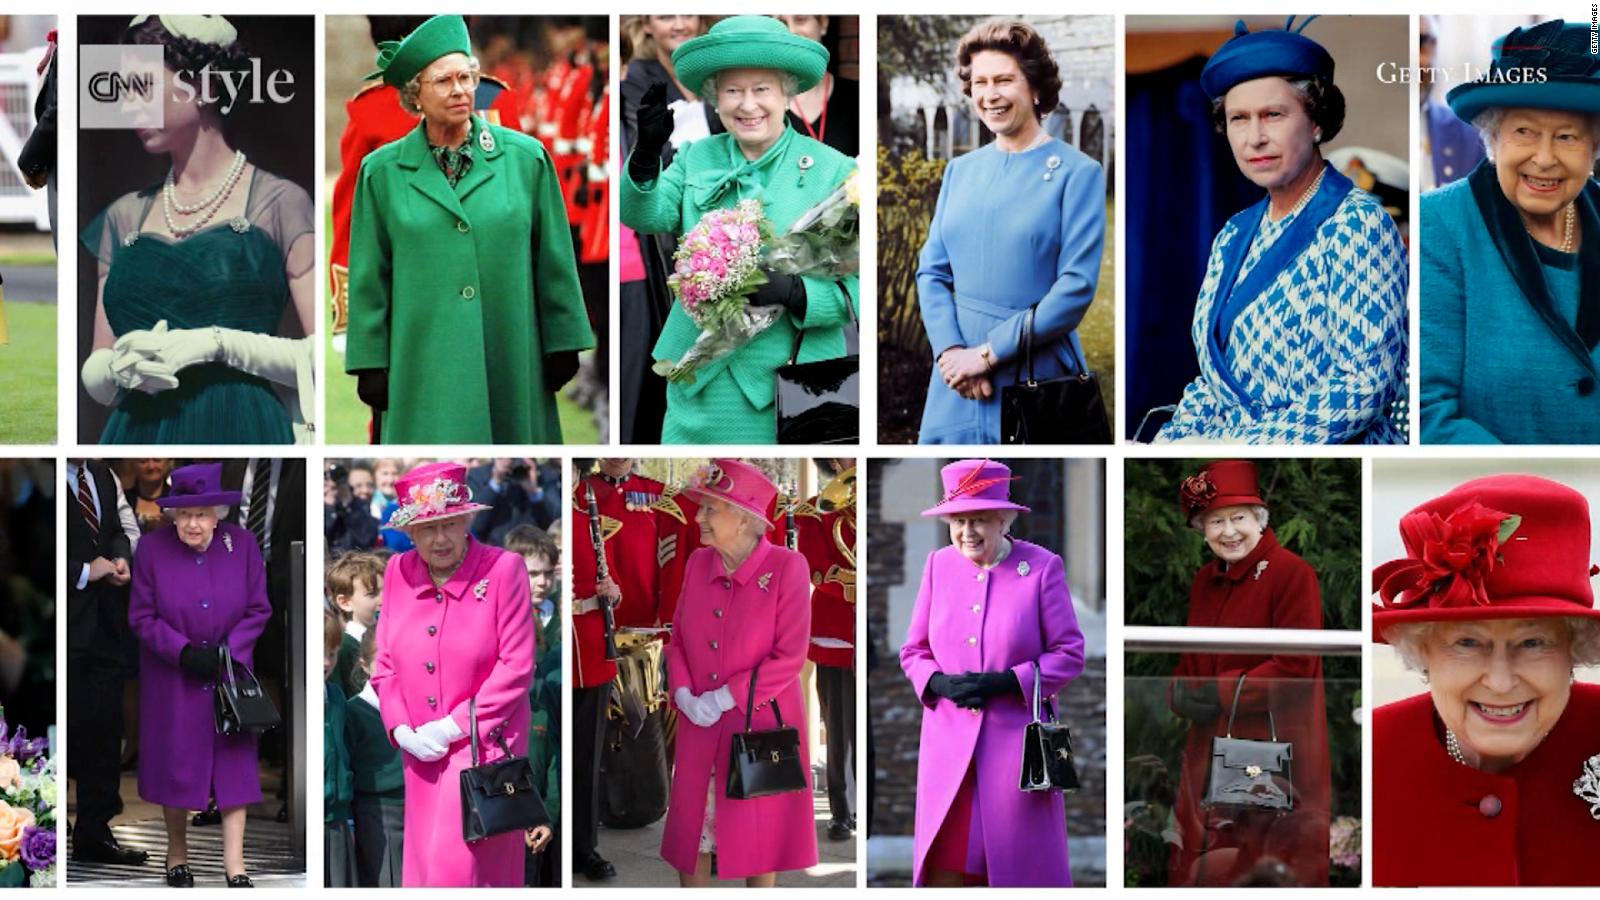 La reina Isabel II y su estilo único y colorido | Video